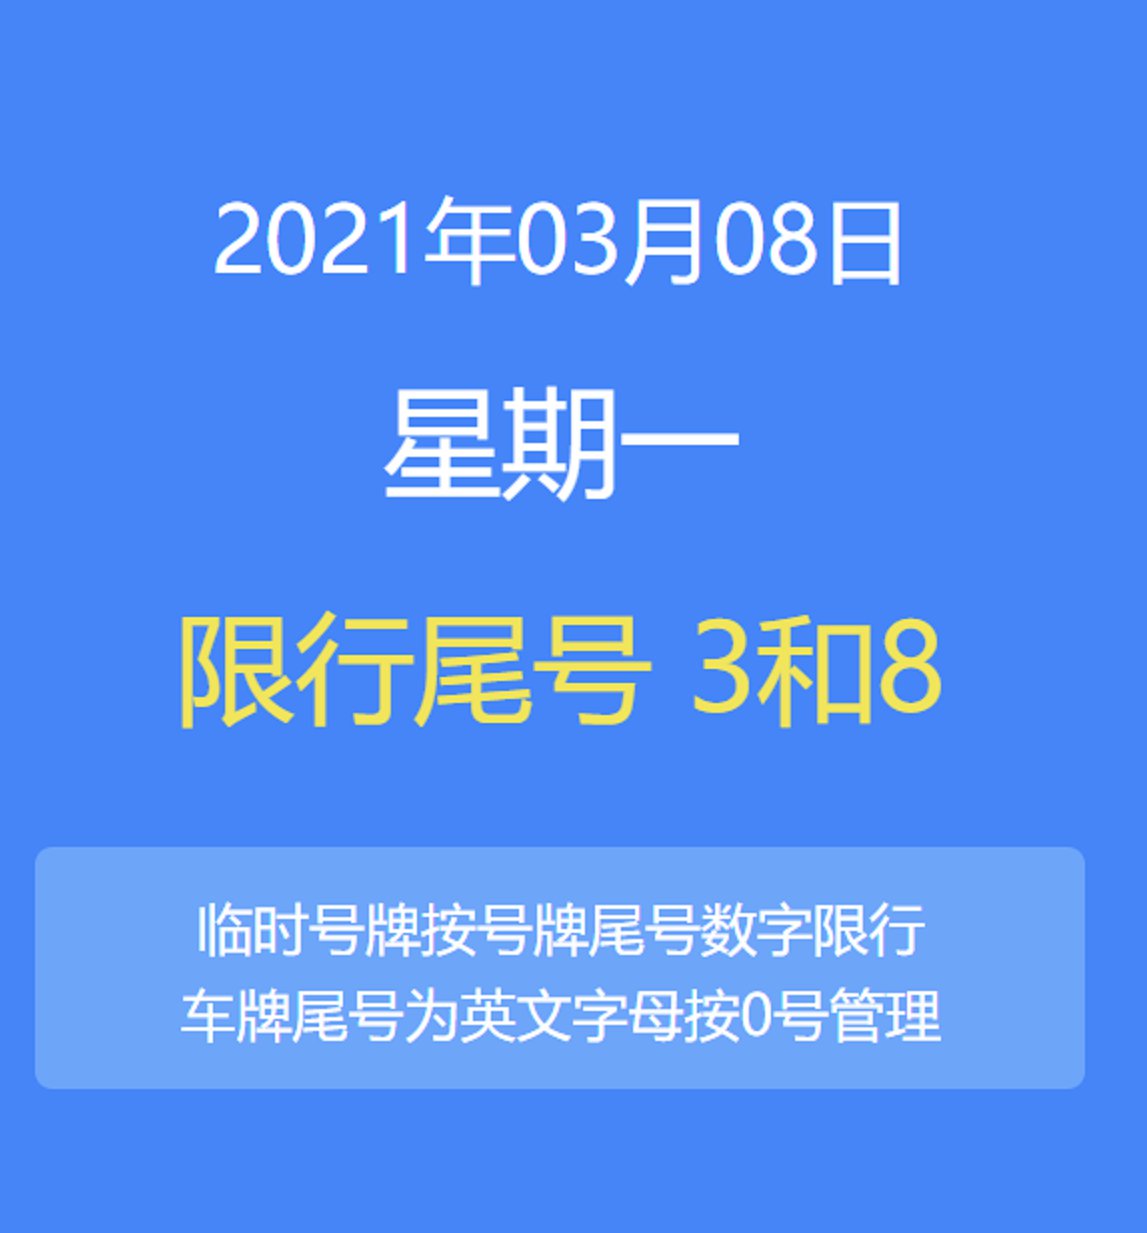 2021年3月8日北京交通管制(限行尾号 拥堵路段)